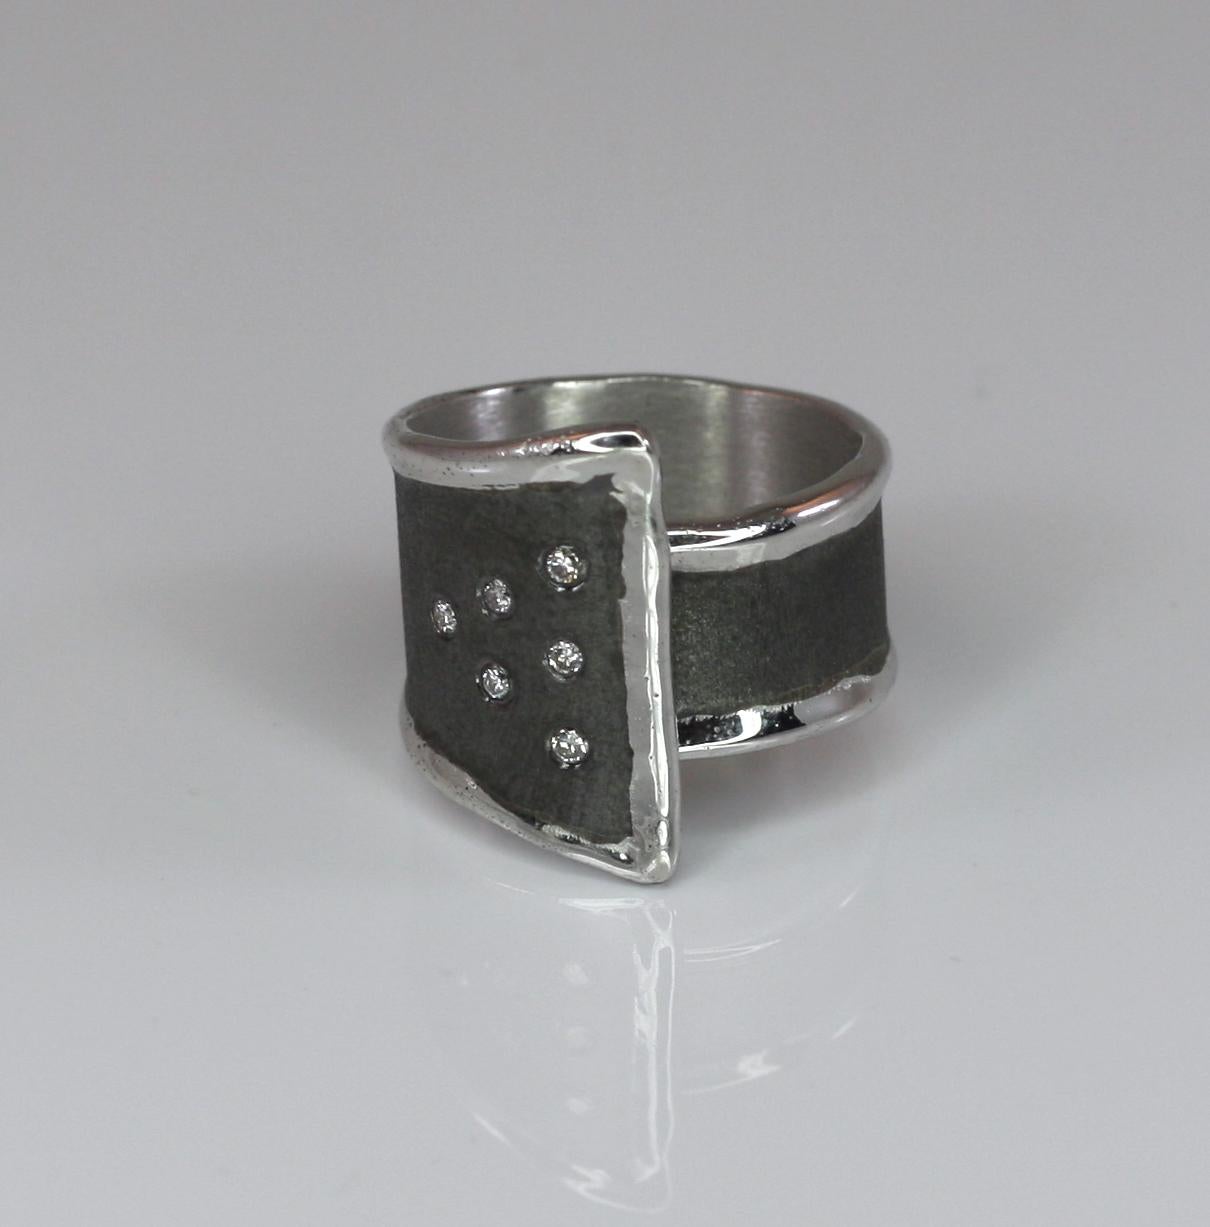 Einzigartiger Yianni Creations 100% handgefertigter Ring aus Feinsilber und mit Palladium überzogen, um den Elementen zu widerstehen. Dieser wunderschöne Ring hat 6 Brillantschliffe mit einem Gesamtgewicht von 0,18 Karat. Die gebürstete Textur hat